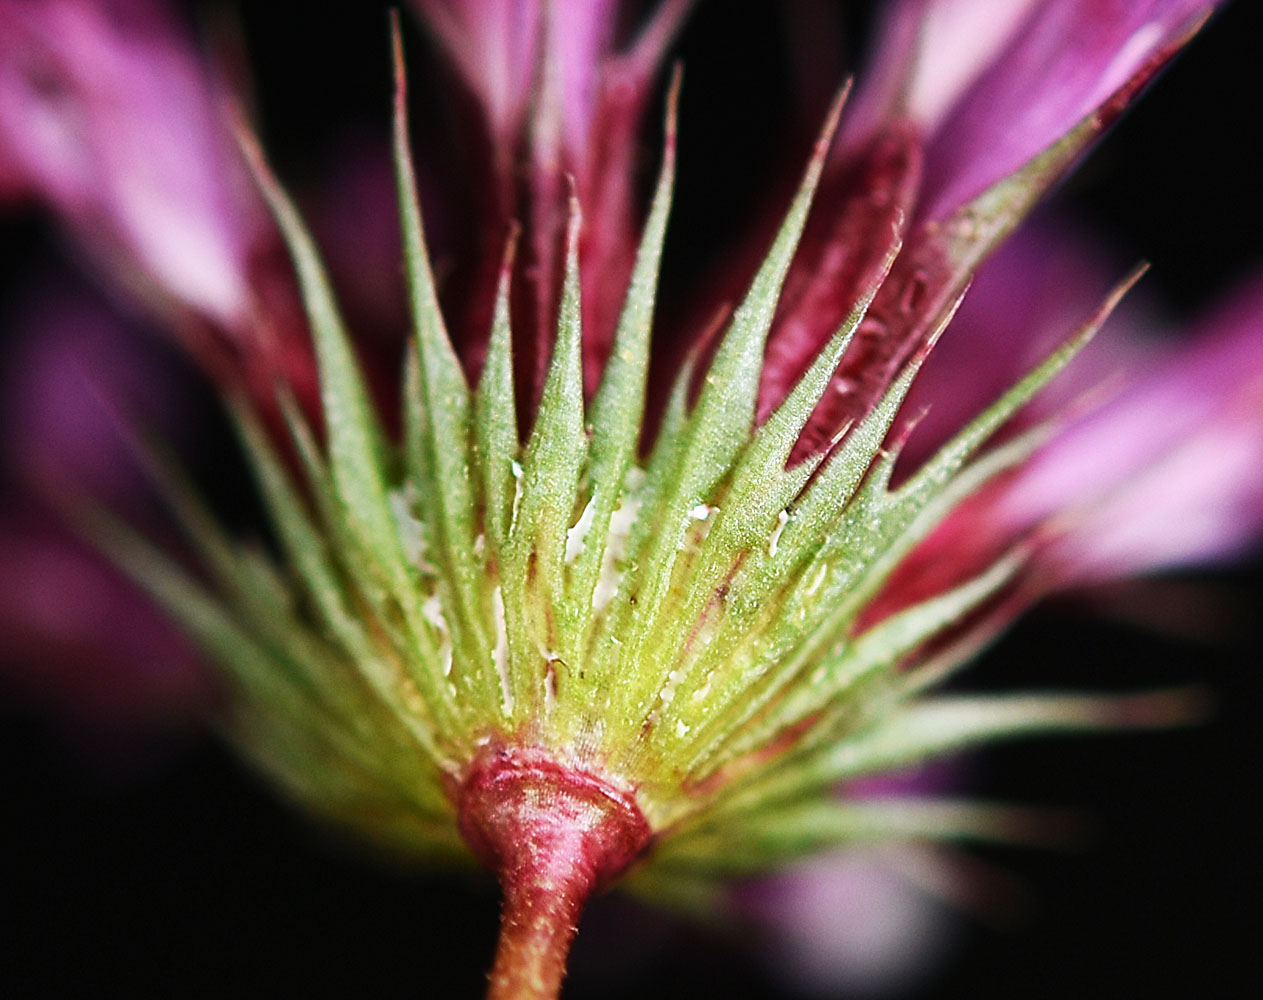 Flora of Eastern Washington Image: Trifolium willdenovii